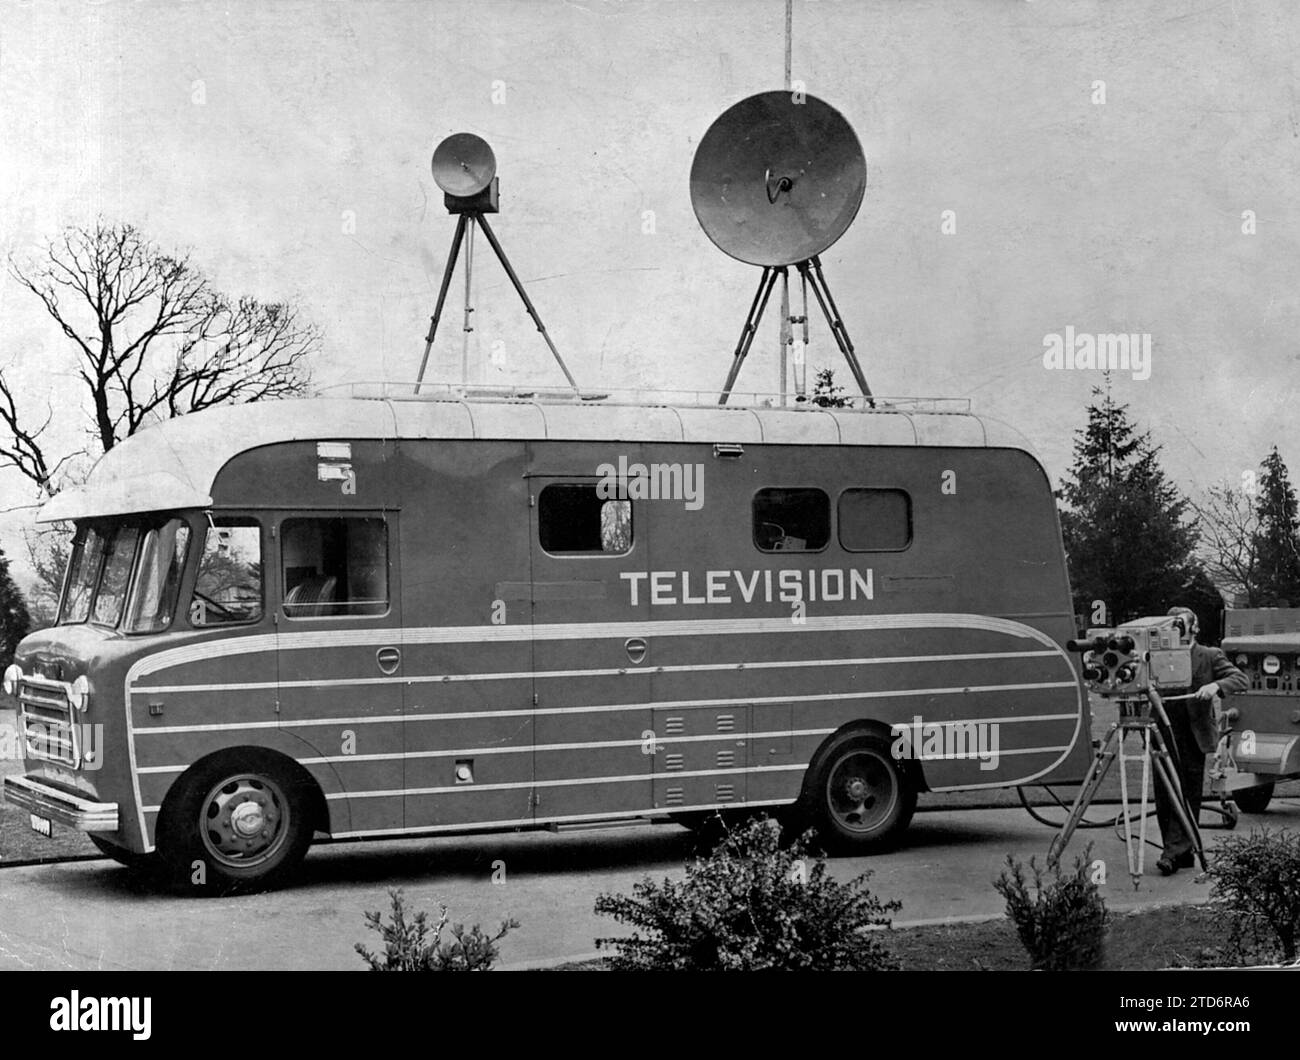 Spagna. Maggio 1956. Apparecchiature mobili Marconi, con telecamere ed emettitori a microonde. Crediti: Album / Archivo ABC Foto Stock